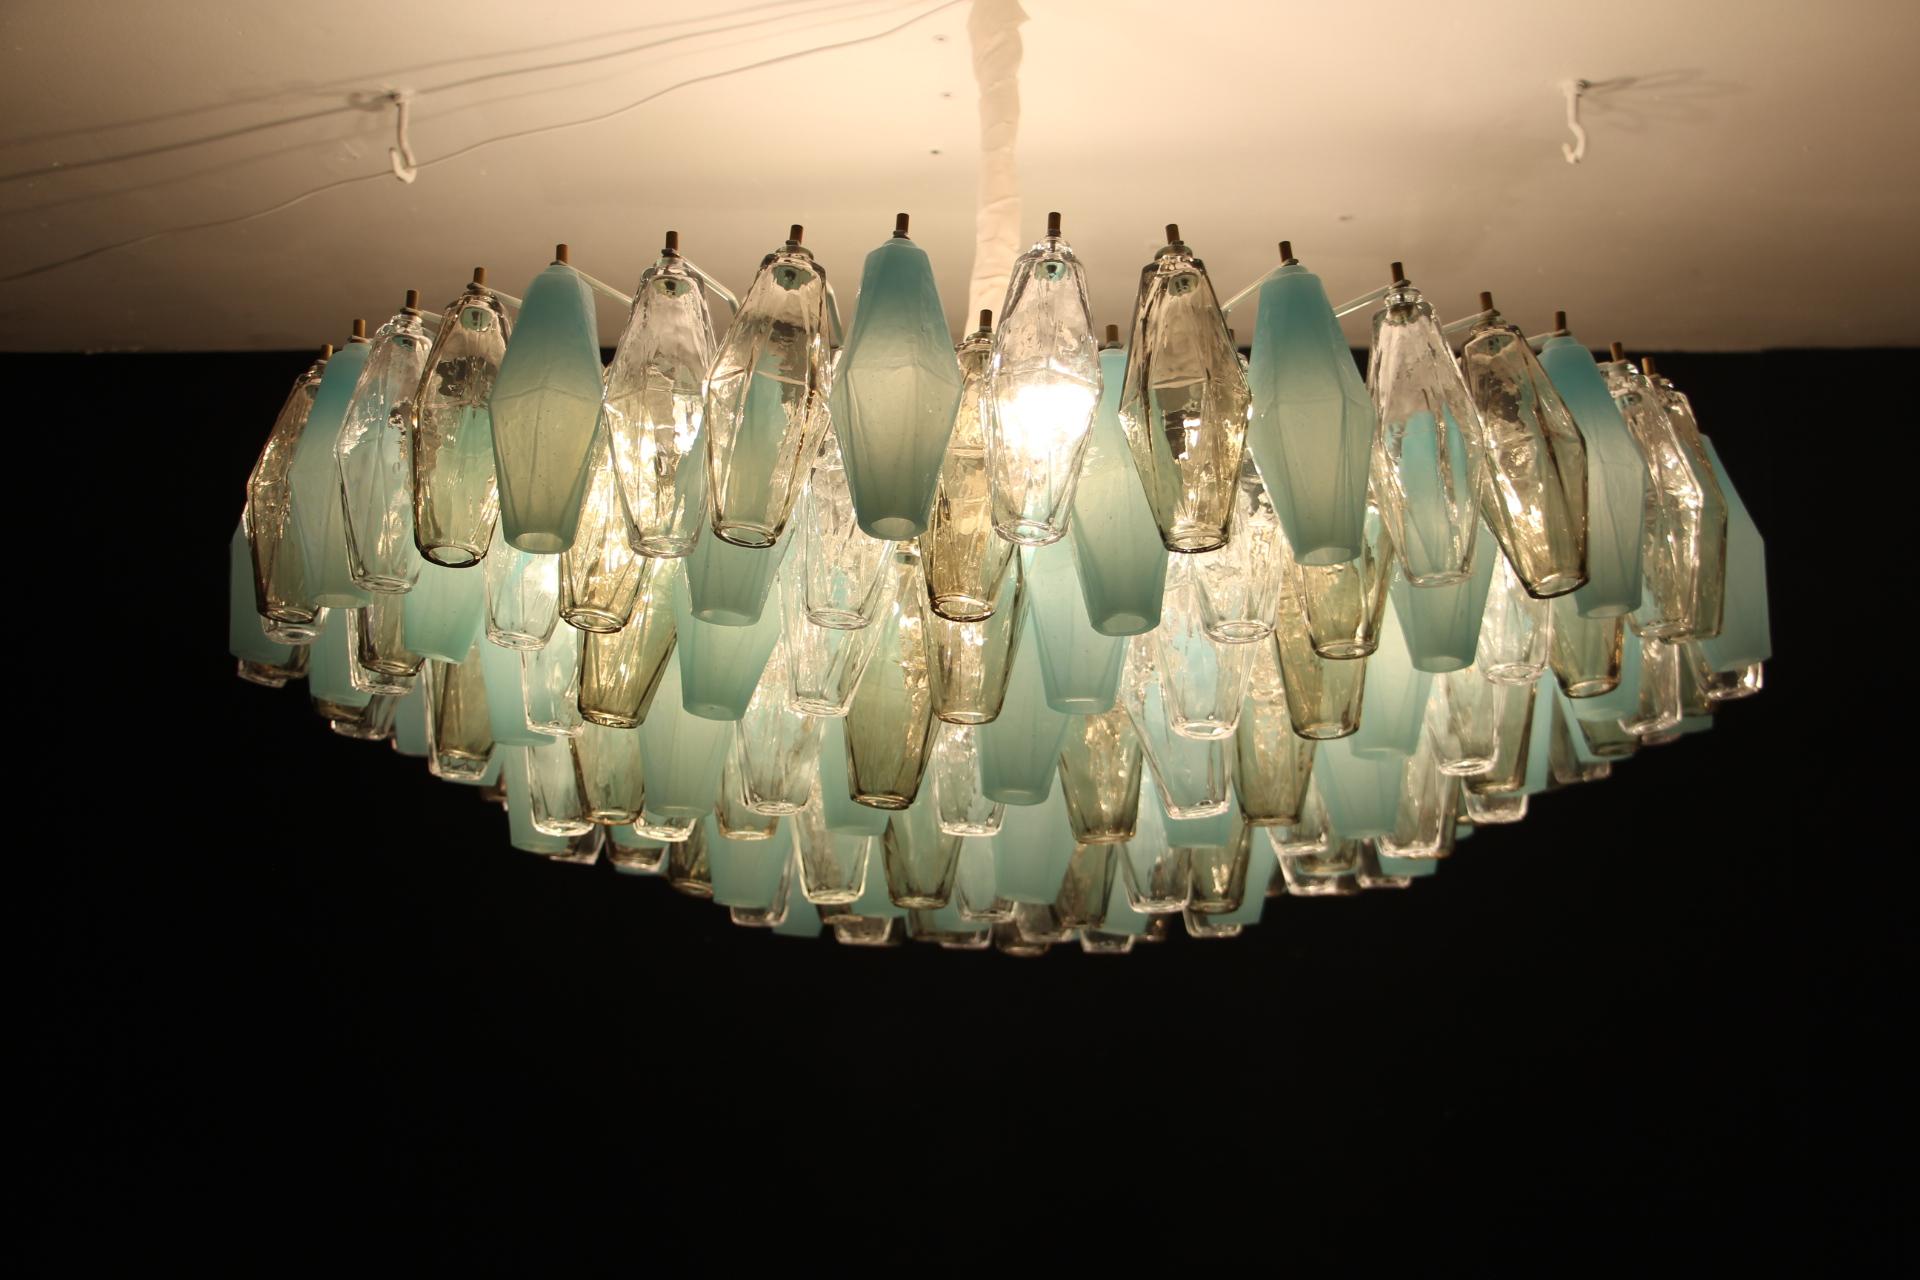 Diese schöne Kronleuchter oder flush mount verfügt über 193 Stücke von Murano Glas poliedri Stücke. Jedes Stück Glas wurde in Murano einzeln von Hand gefertigt und weist eine abstrakte Diamantfacettenform auf. Die Farben des Glases sind sehr